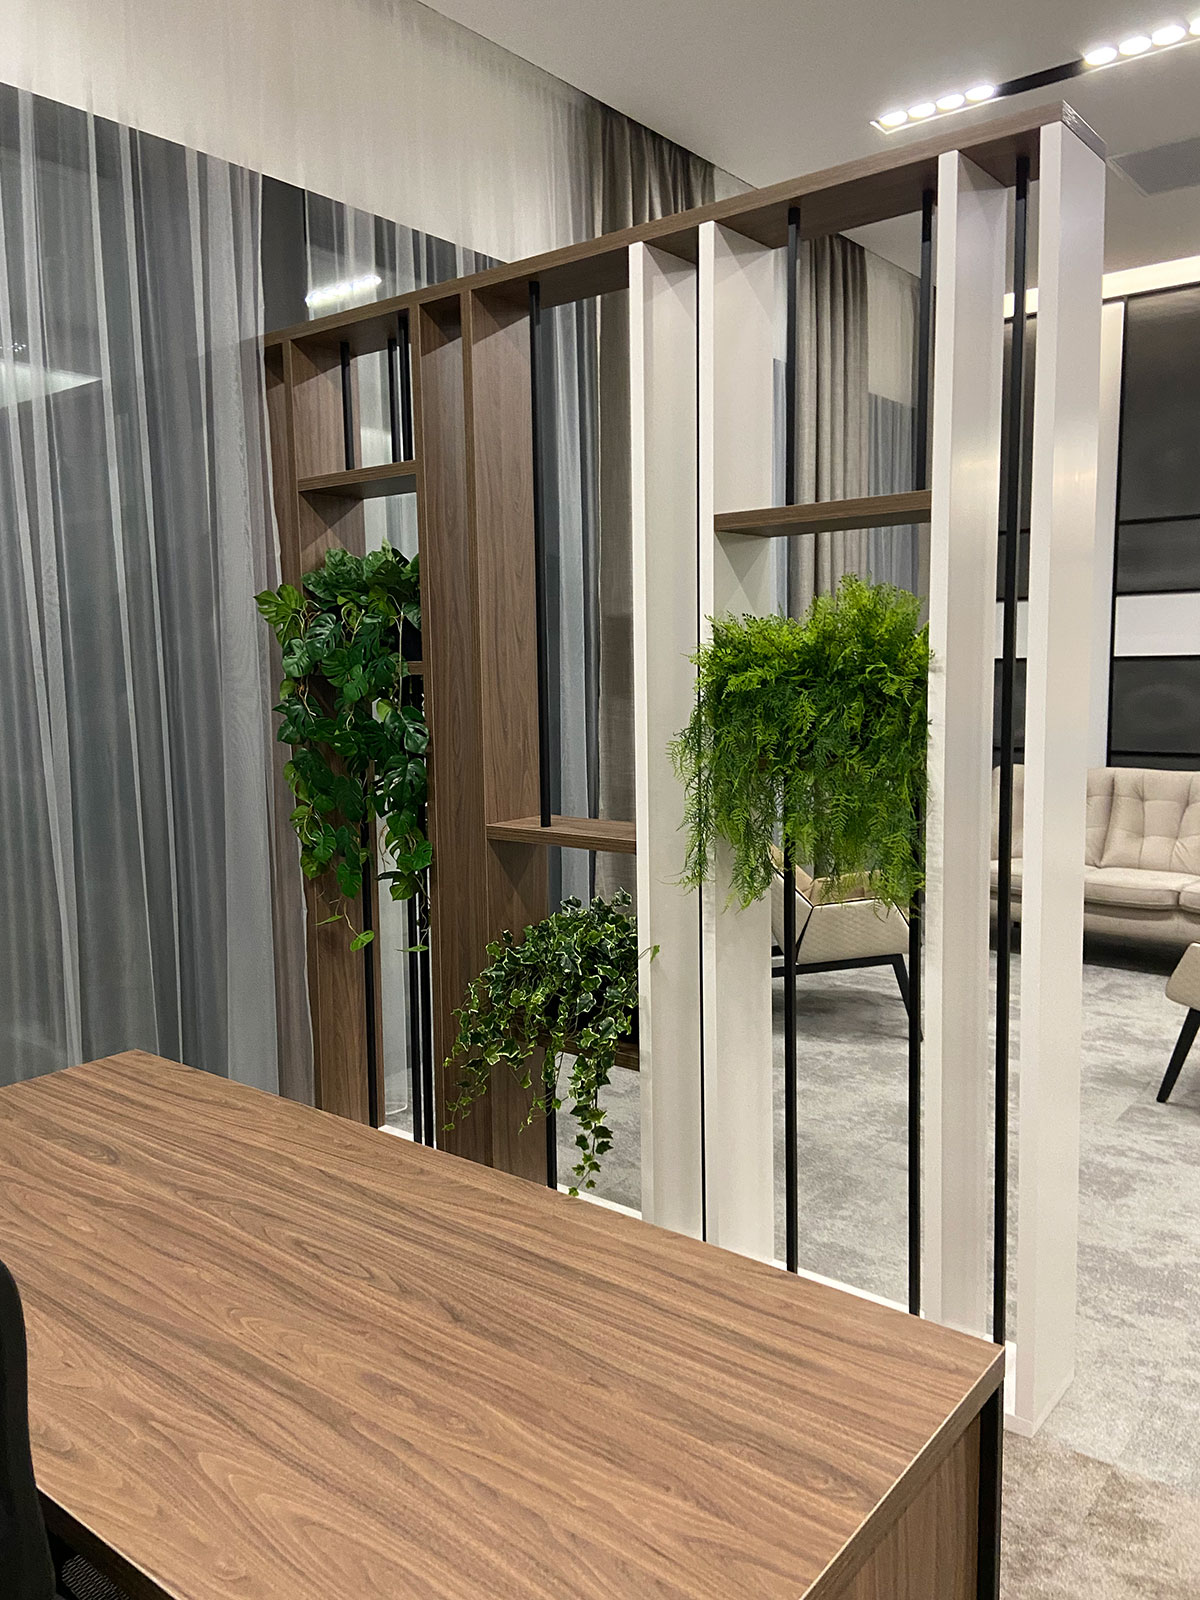 Nowoczesne biuro z biurkiem i roślinami.